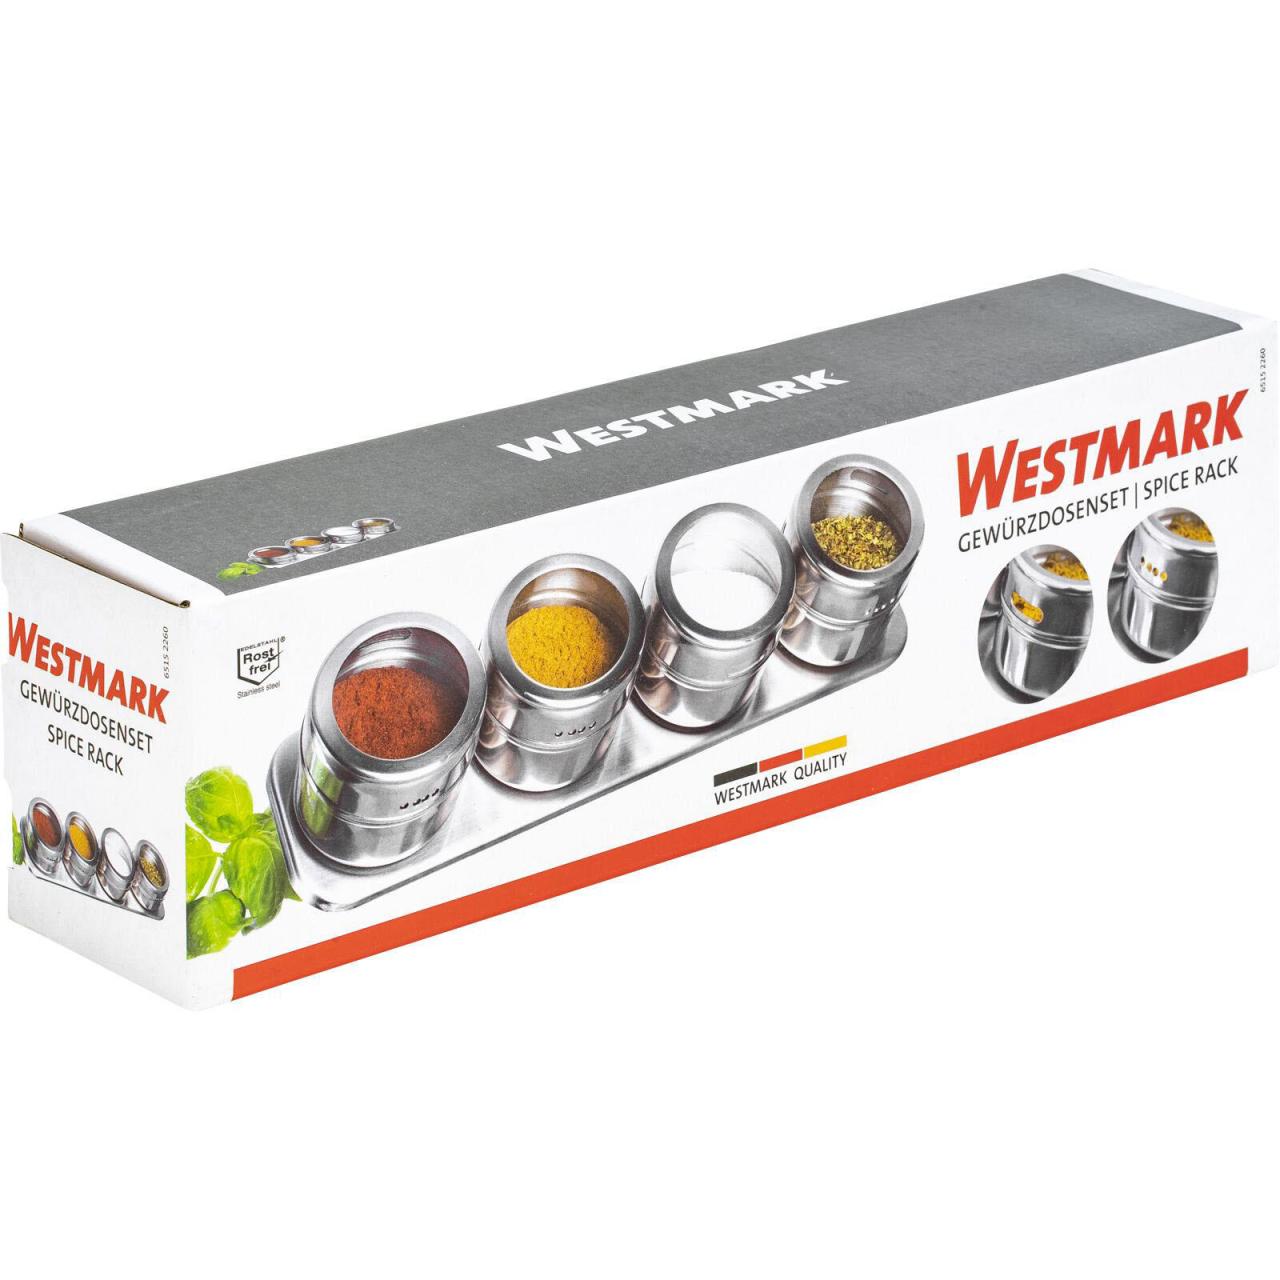 Westmark Gewürzdosenset 5 tlg. von WESTMARK